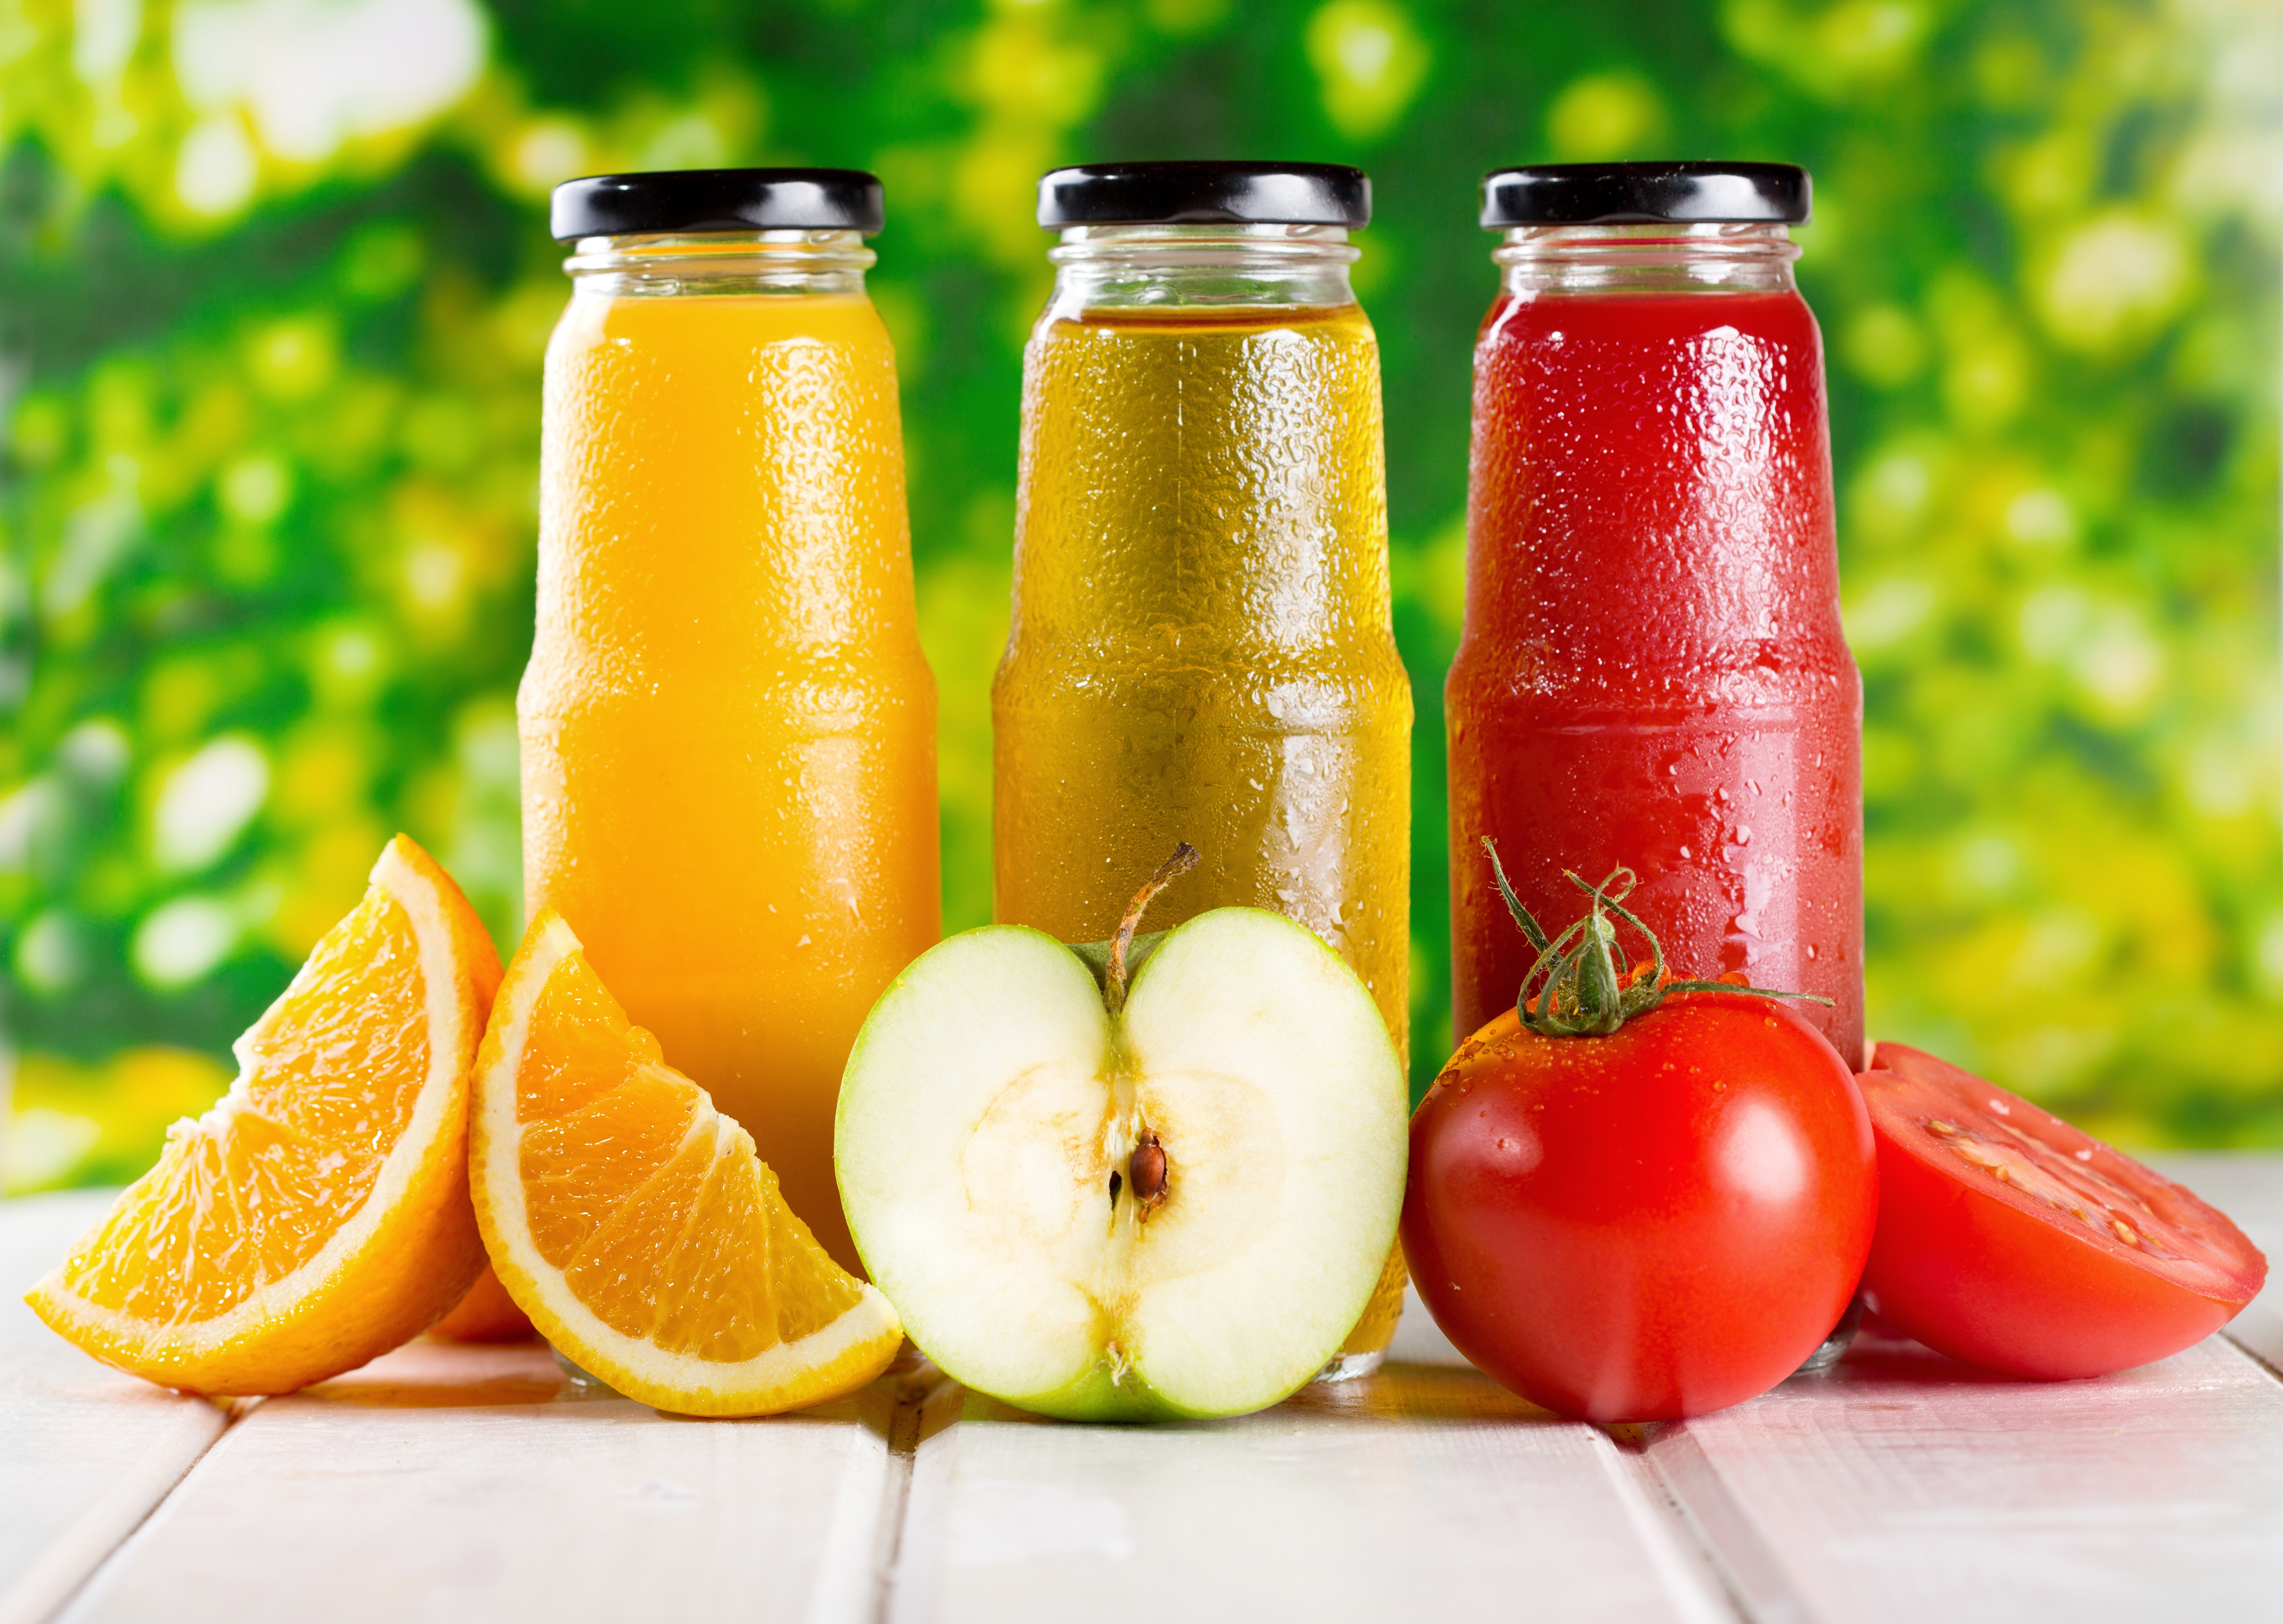 Download mobile wallpaper Food, Apple, Drink, Bottle, Tomato, Orange (Fruit) for free.